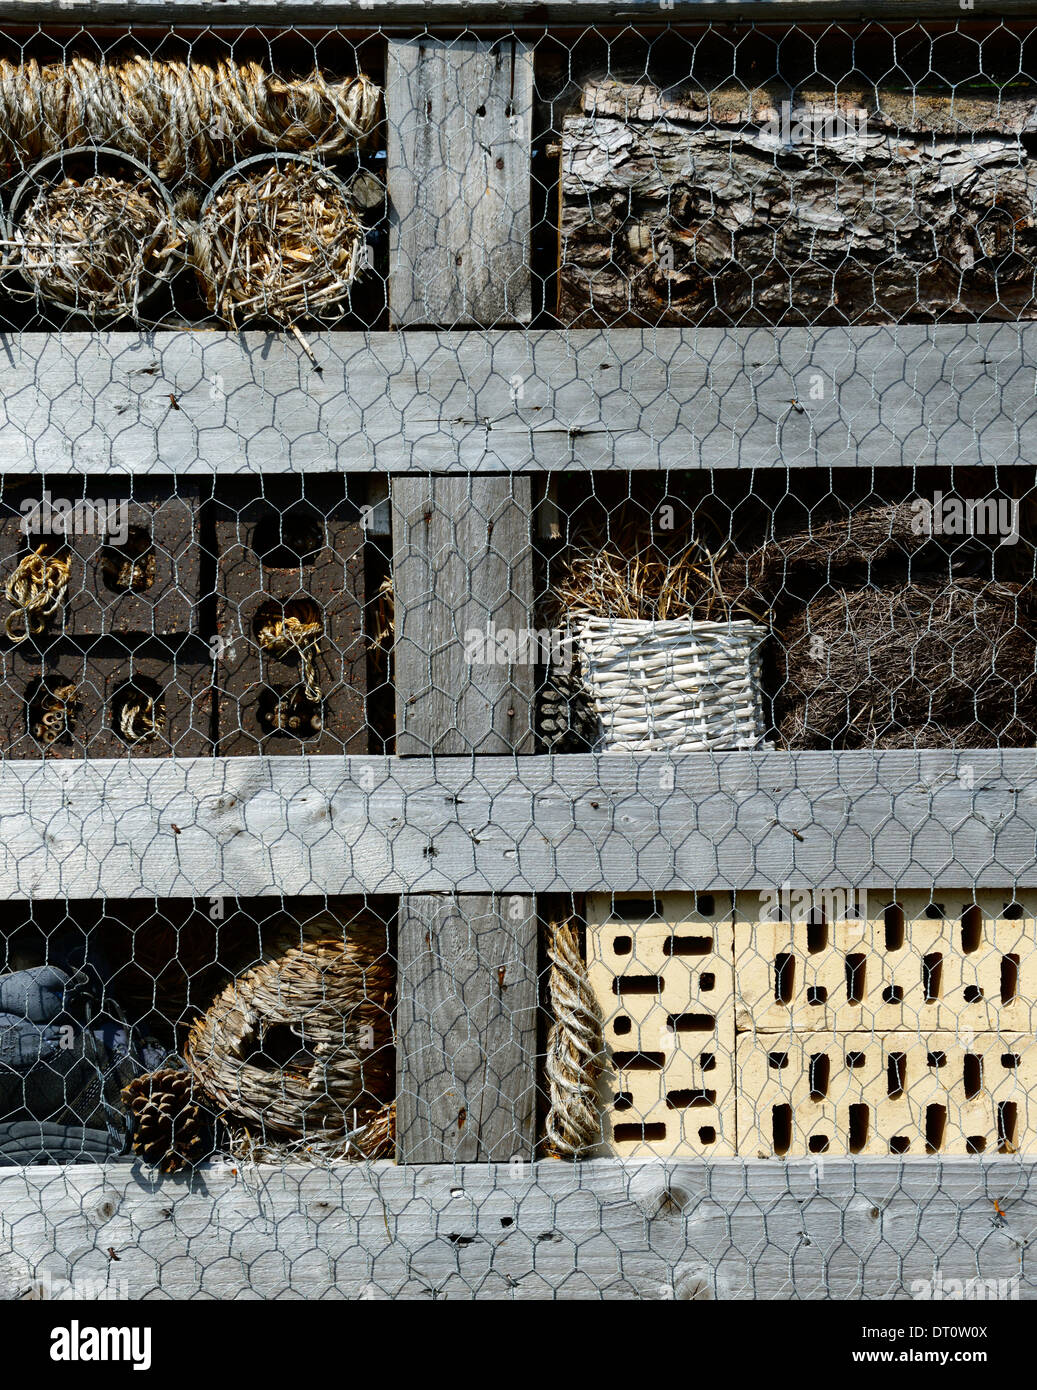 Biene Insektenhotel Hotels Tierwelt freundliche Garten Gartenarbeit gemischte Materialvielfalt Solitäre Bienen Insekten Erhaltung Kasten Oase Stockfoto